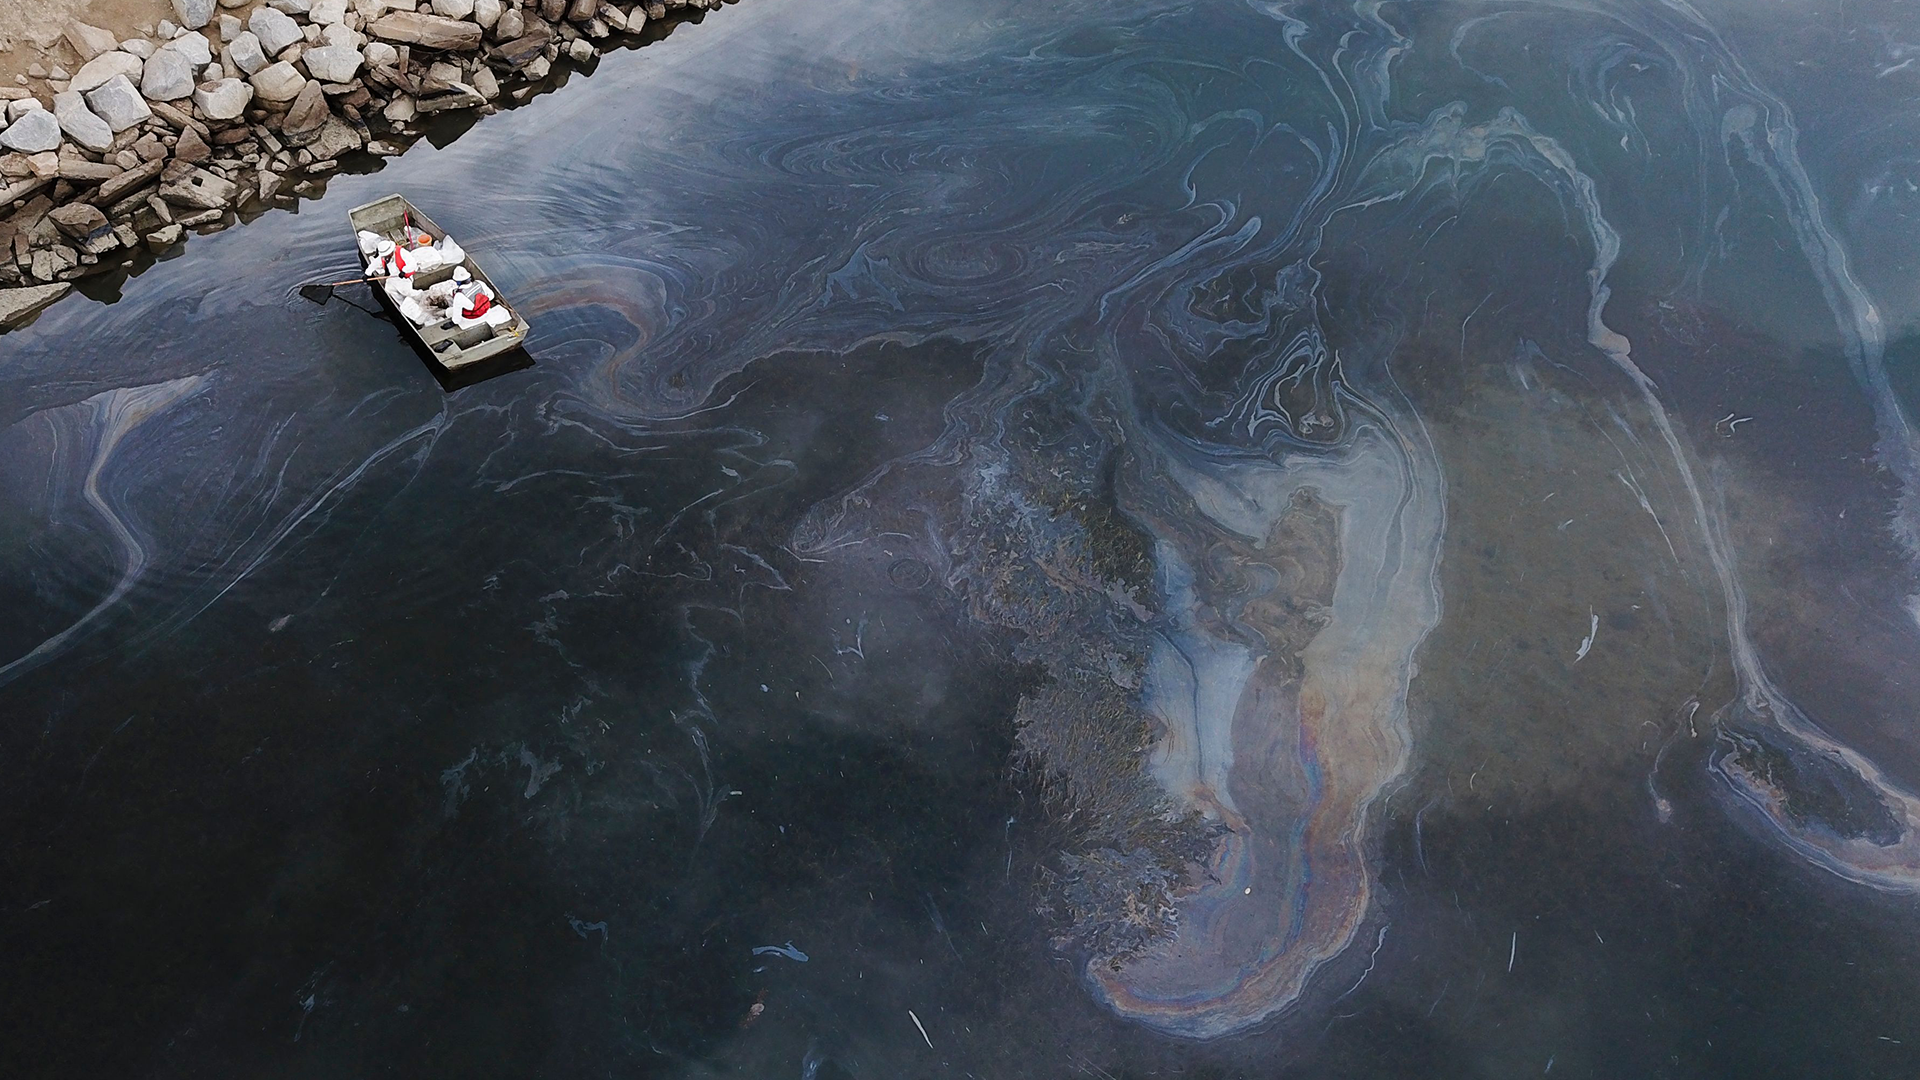 Oil spill response base on track for Ucluelet, Port Alberni